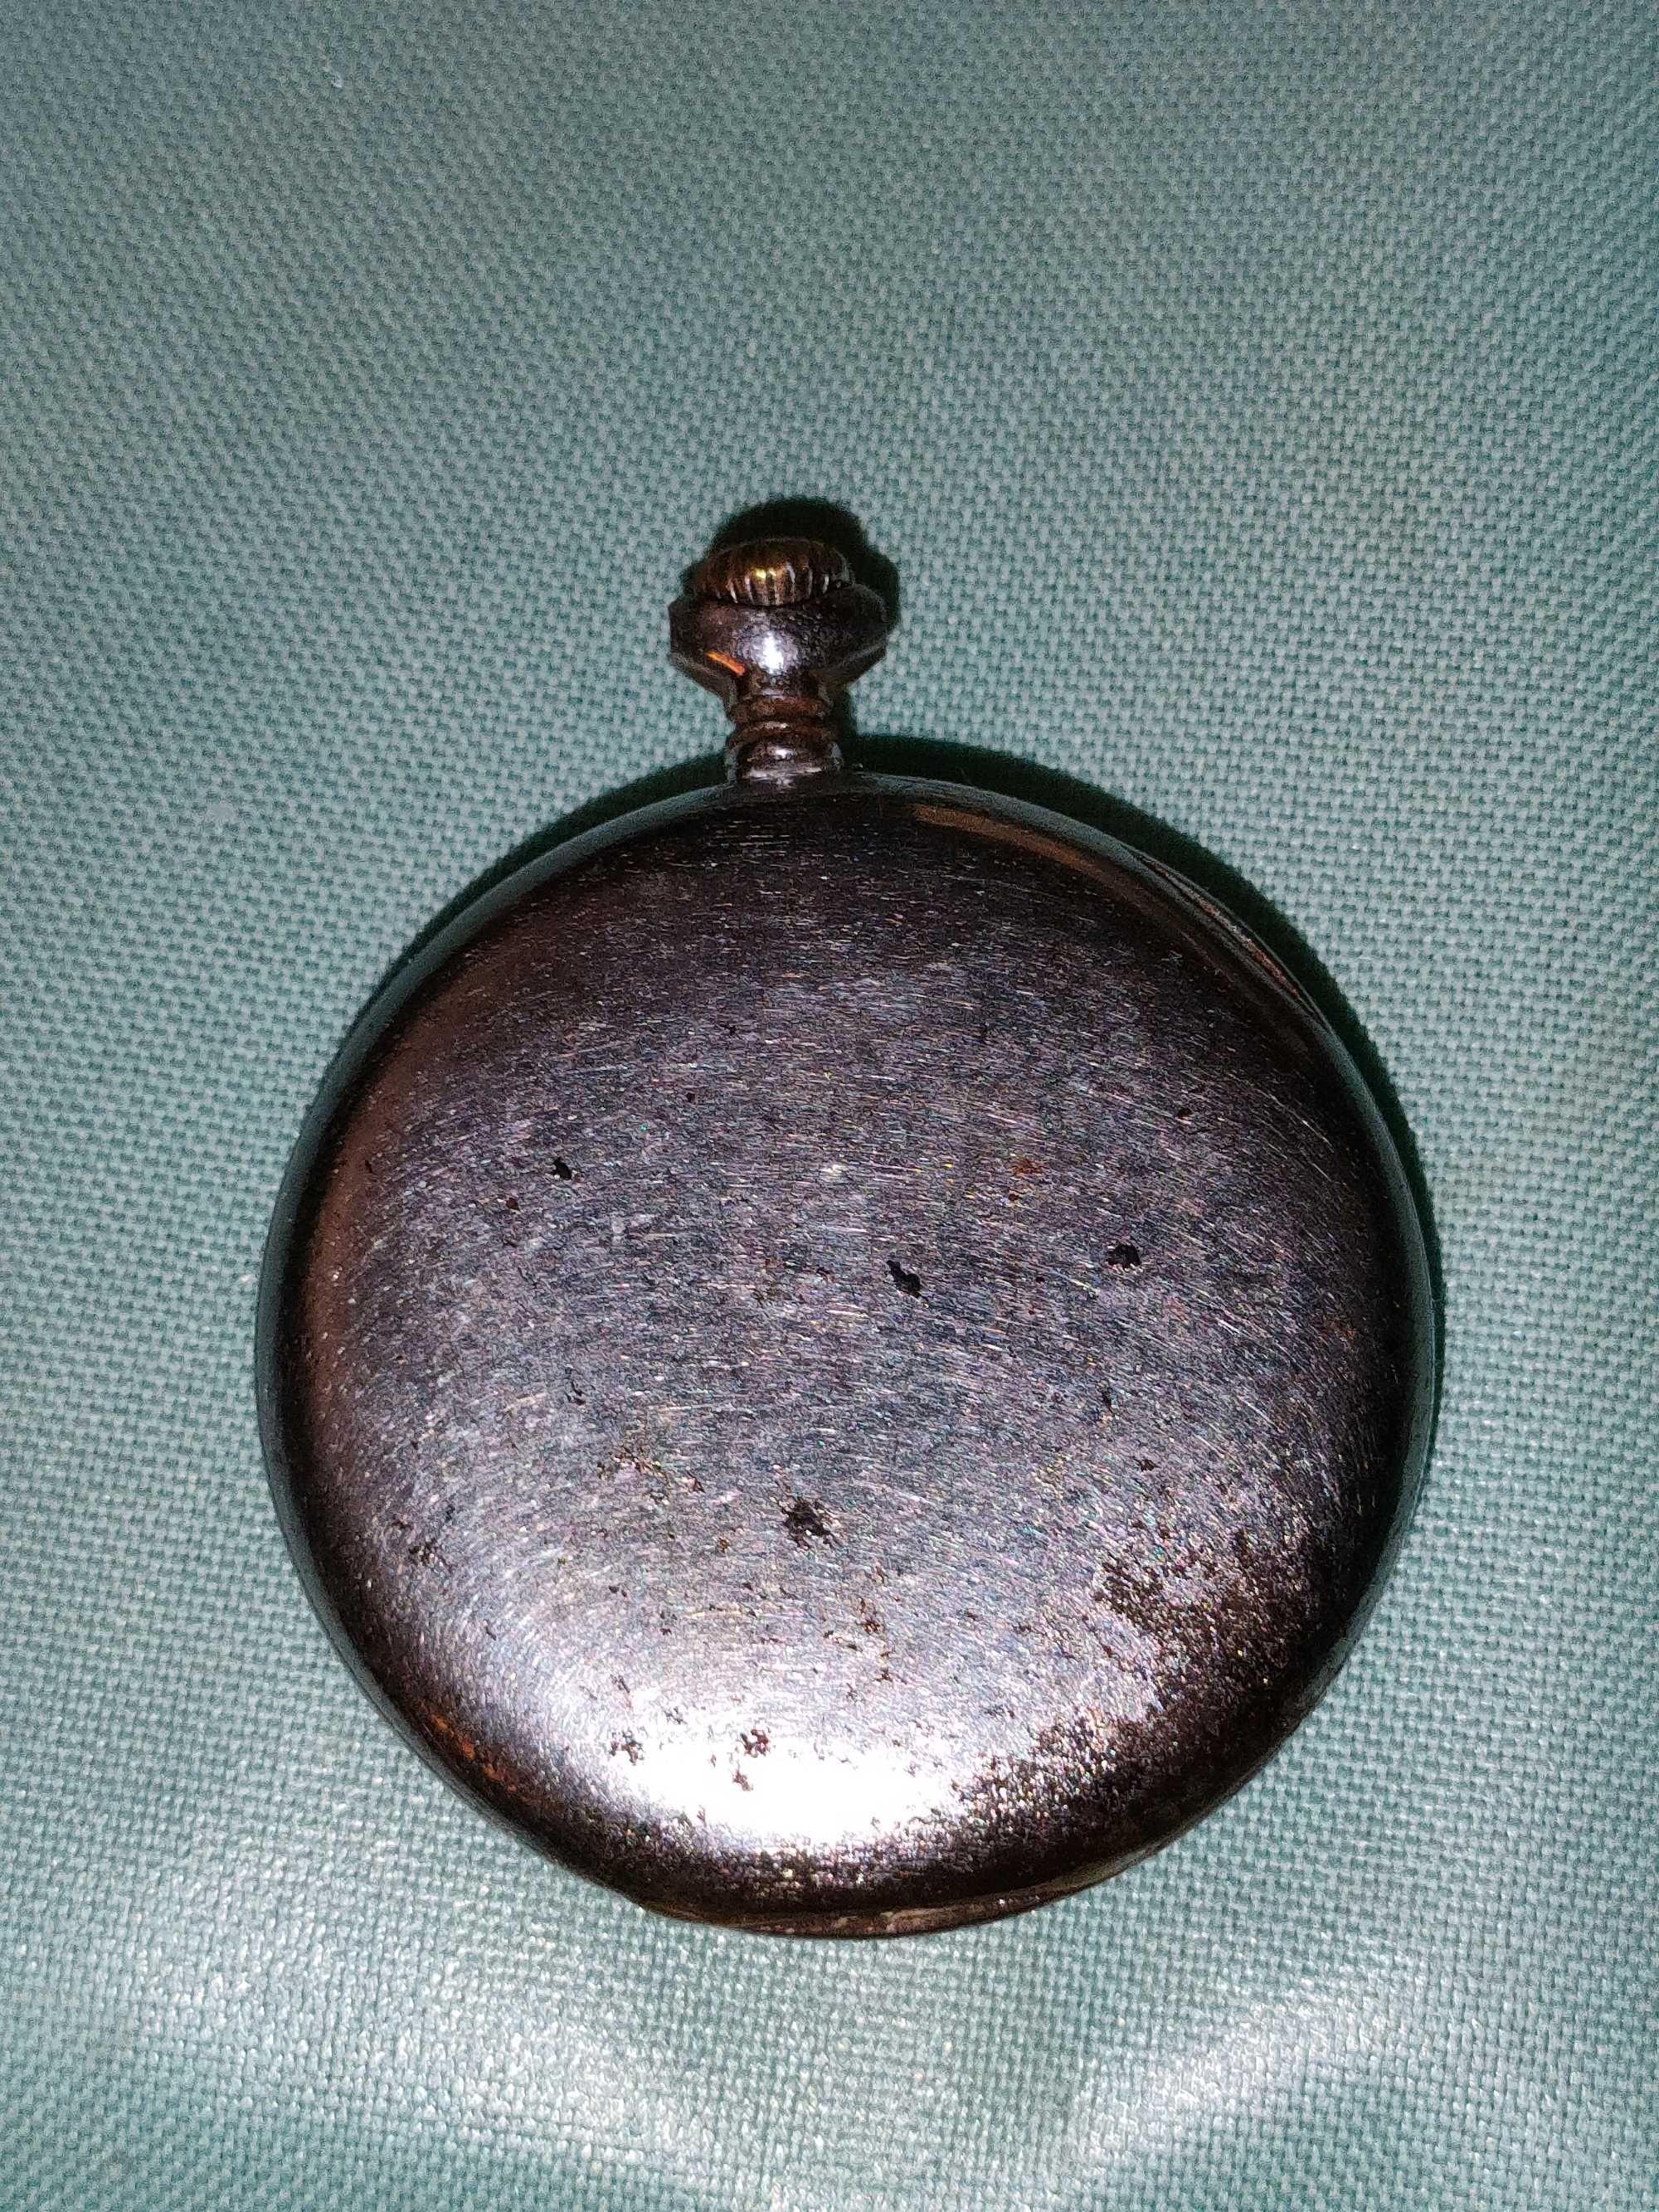 Relógio de bolso muito antigo